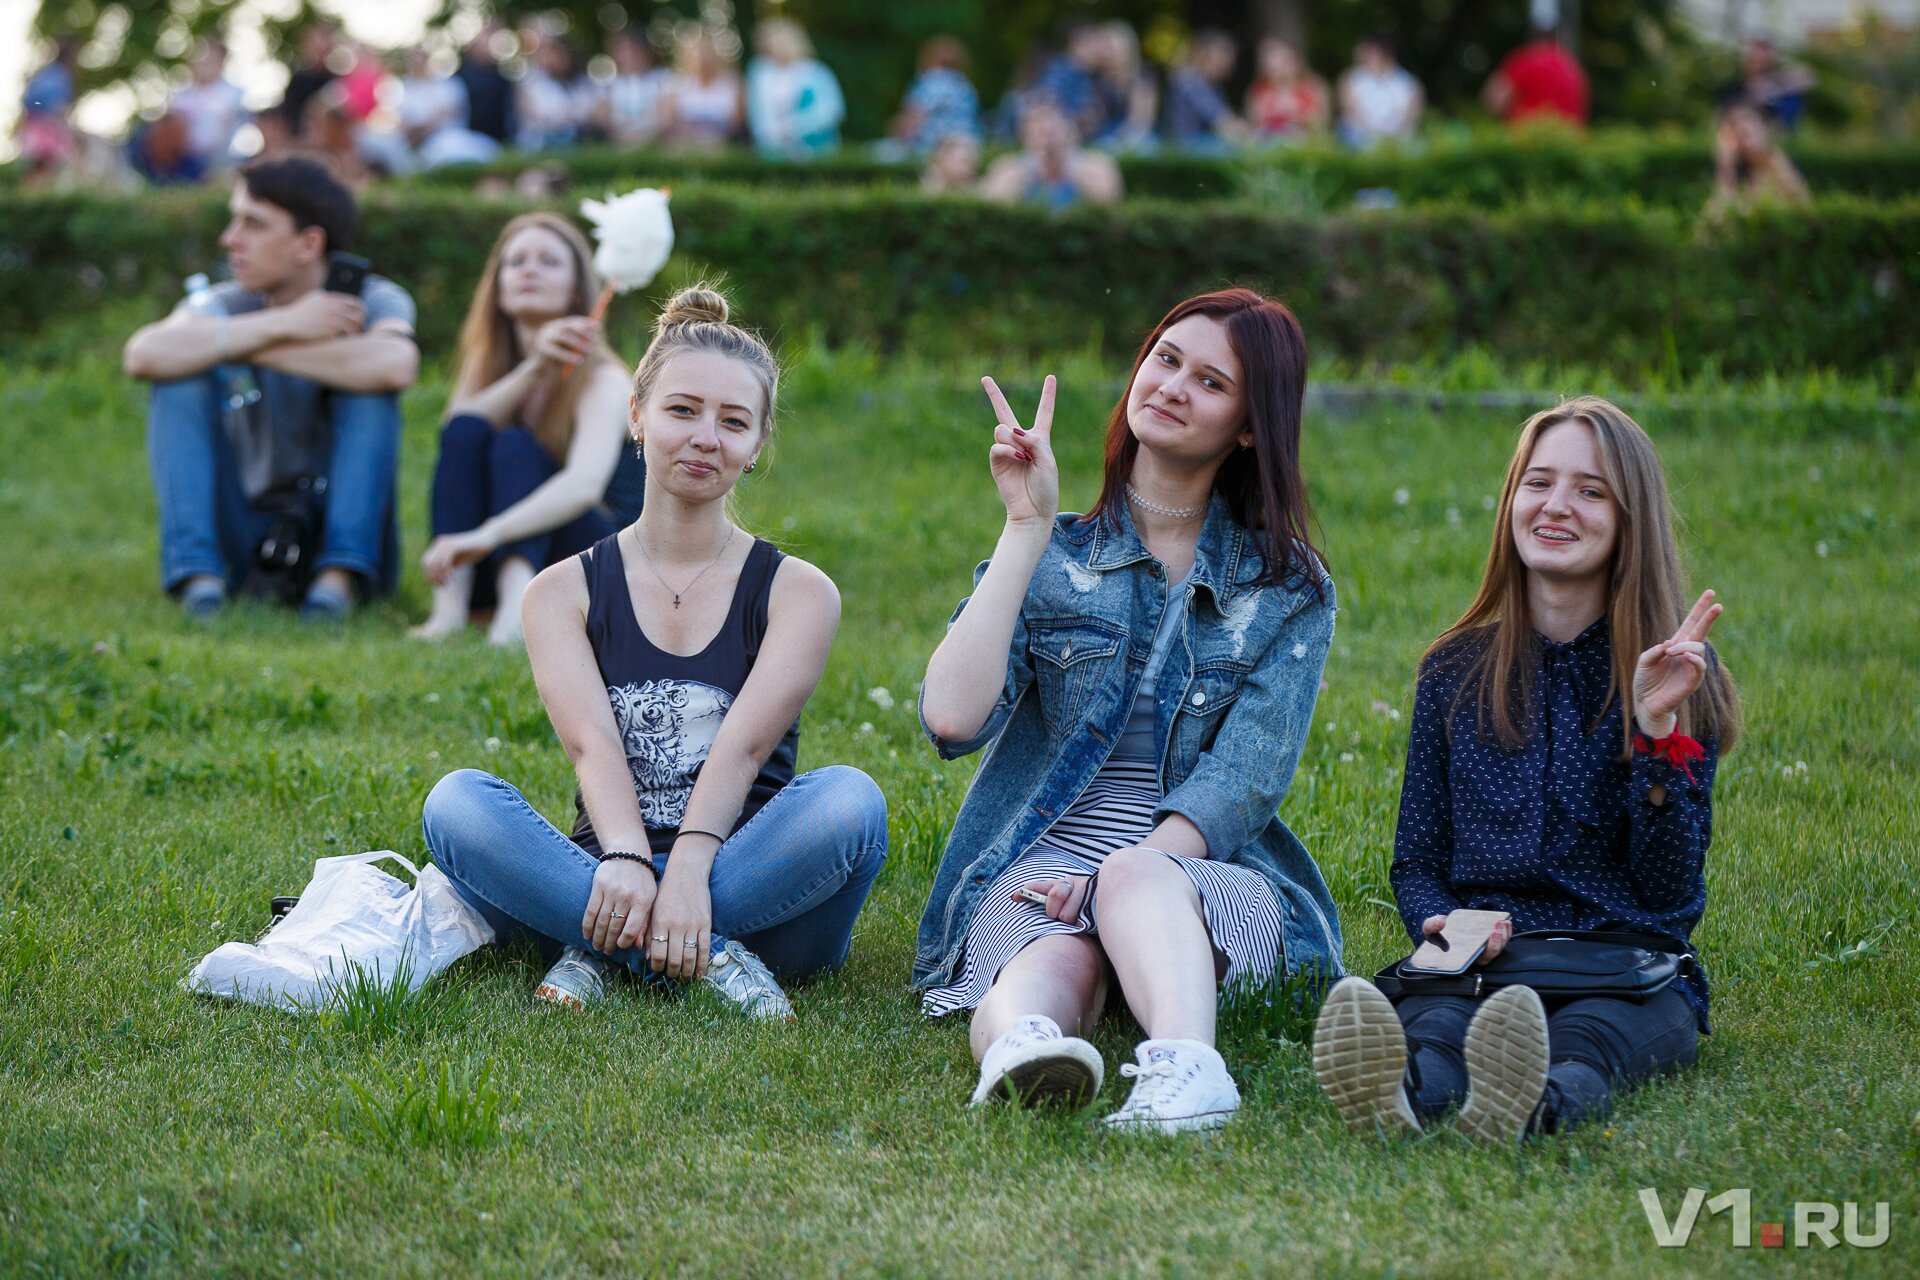 Волгоградскую молодежь в мемориальном парке поздравят местные рокеры и джаз-банд